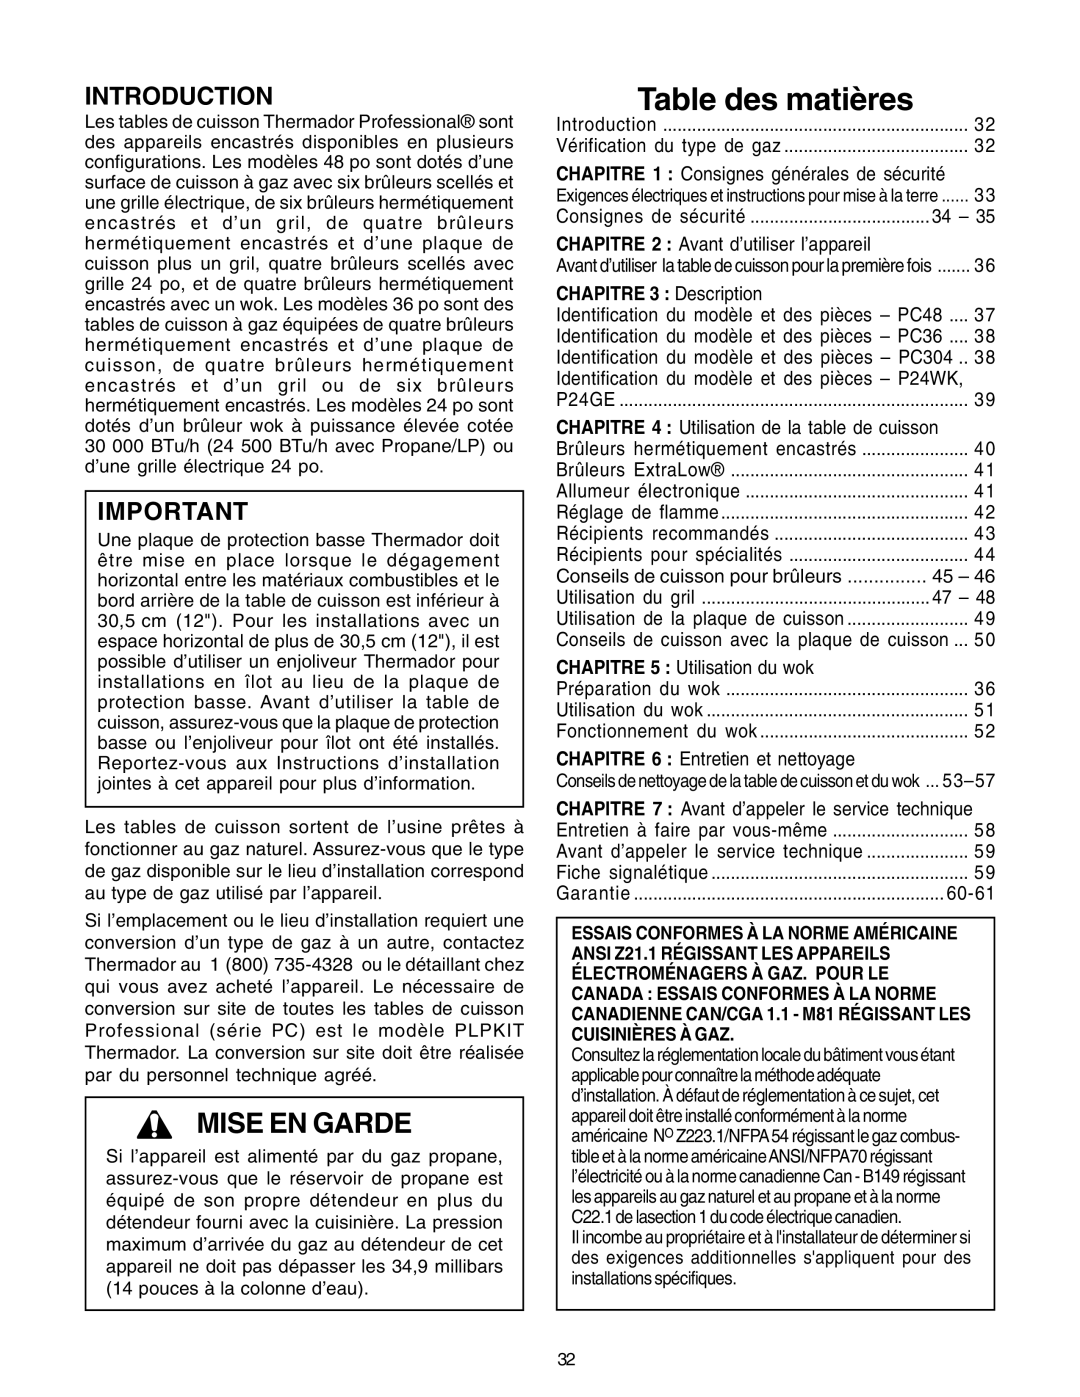 Thermador PC30, P24GE manuel dutilisation Table des matières, Mise En Garde, Introduction, CHAPITRE 3 Description 